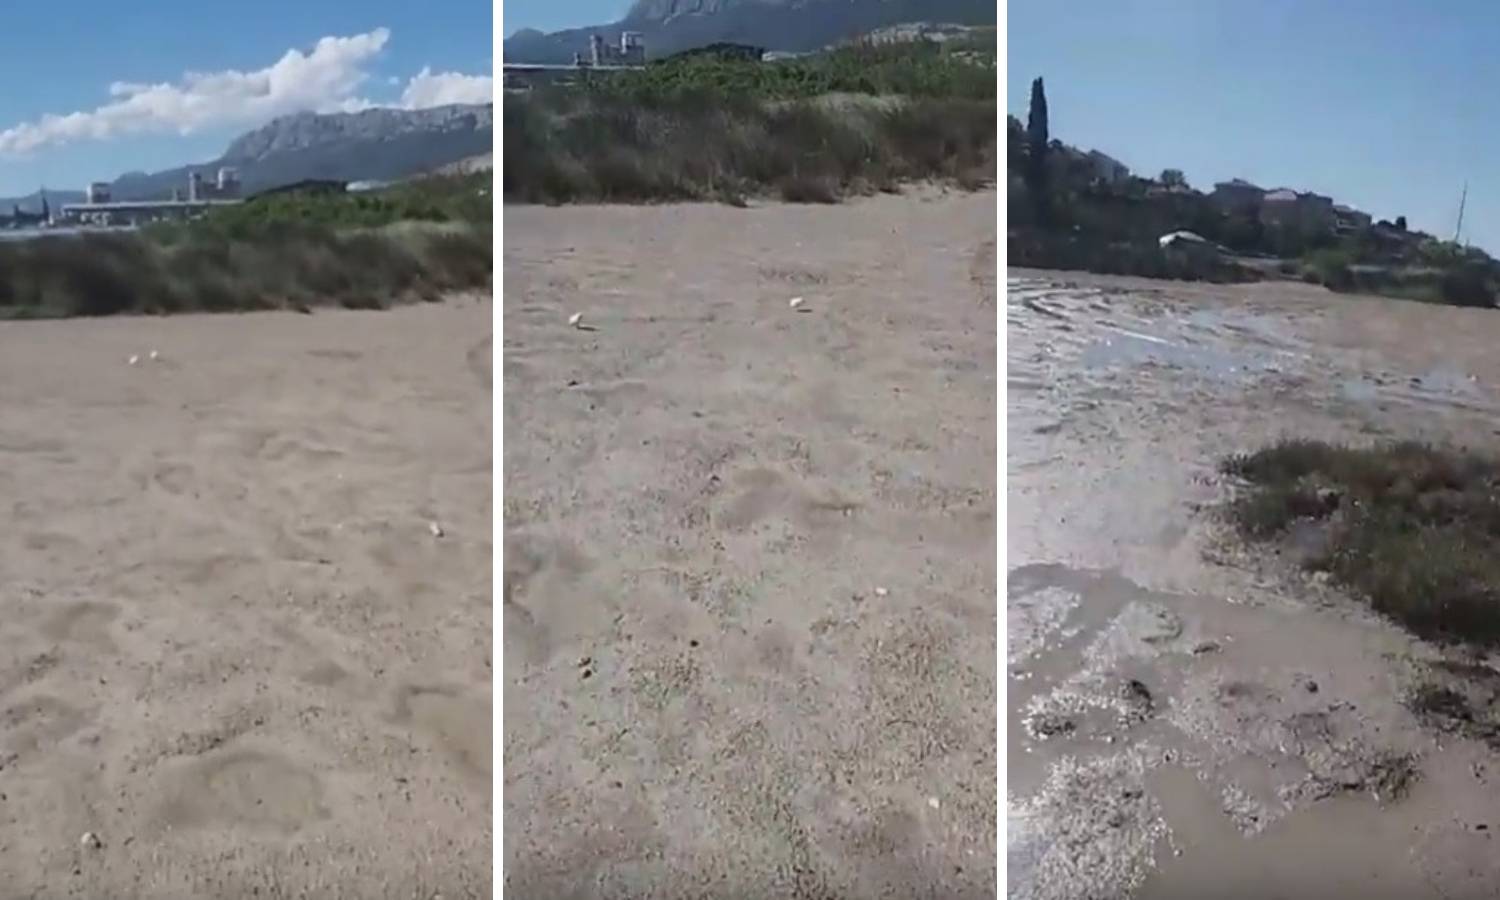 Netko je pustio stotinjak pilića koji jurcaju po blatu, spasite ih